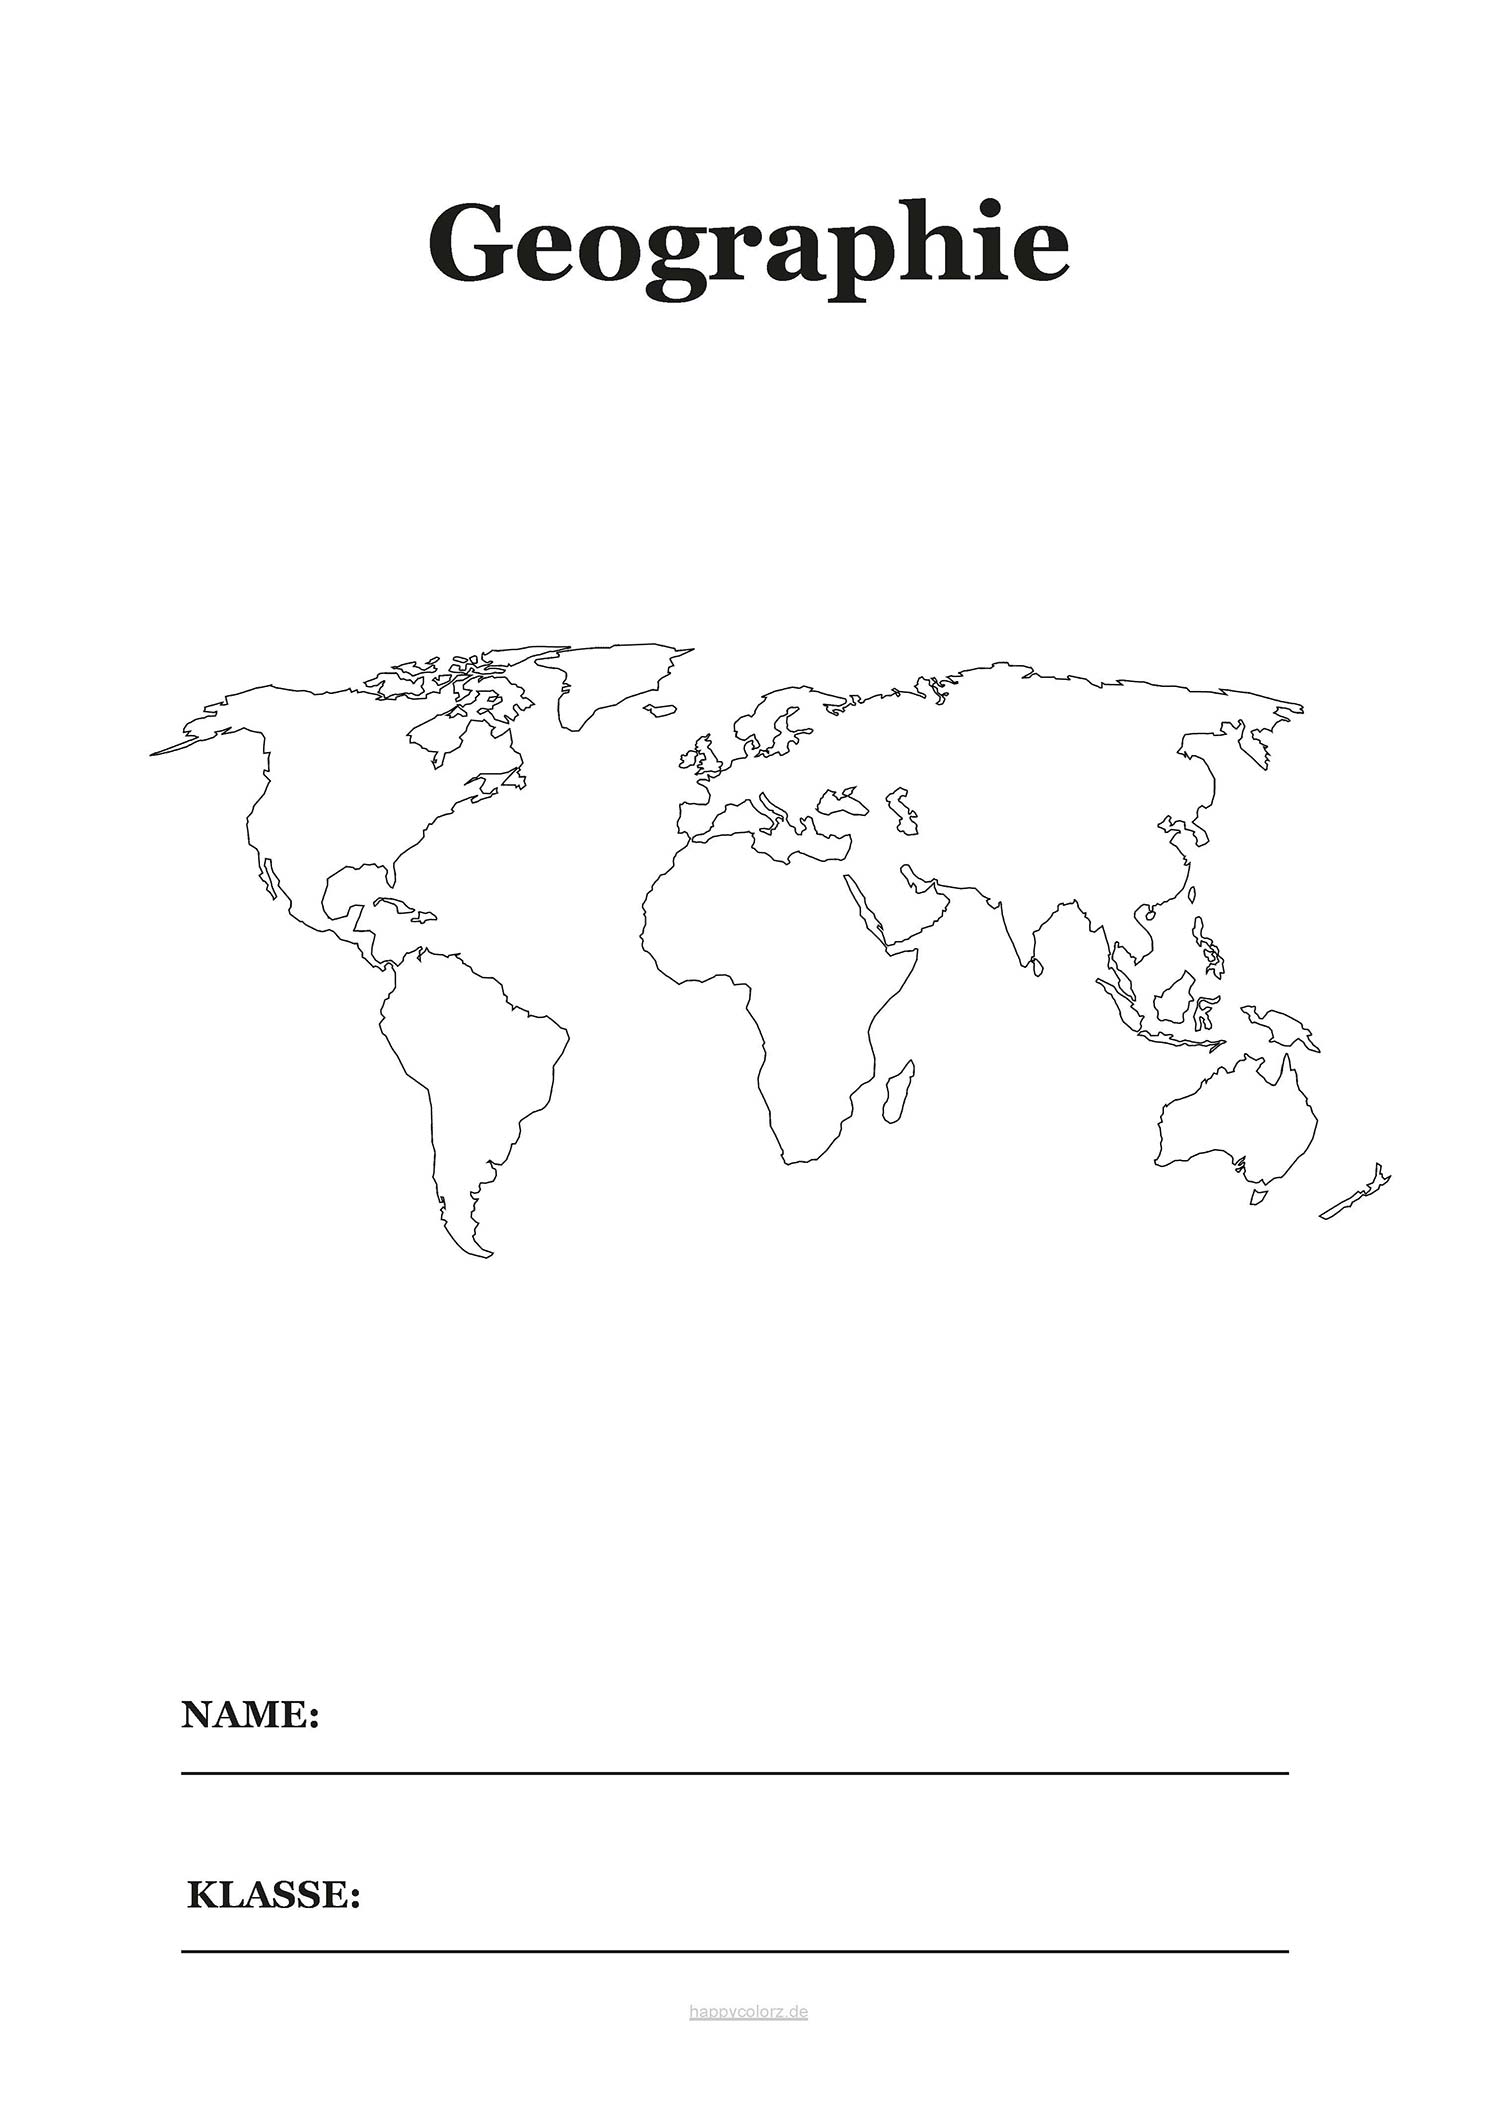 Geographie Deckblatt mit Karte zum kostenlosen ausdrucken (pdf)